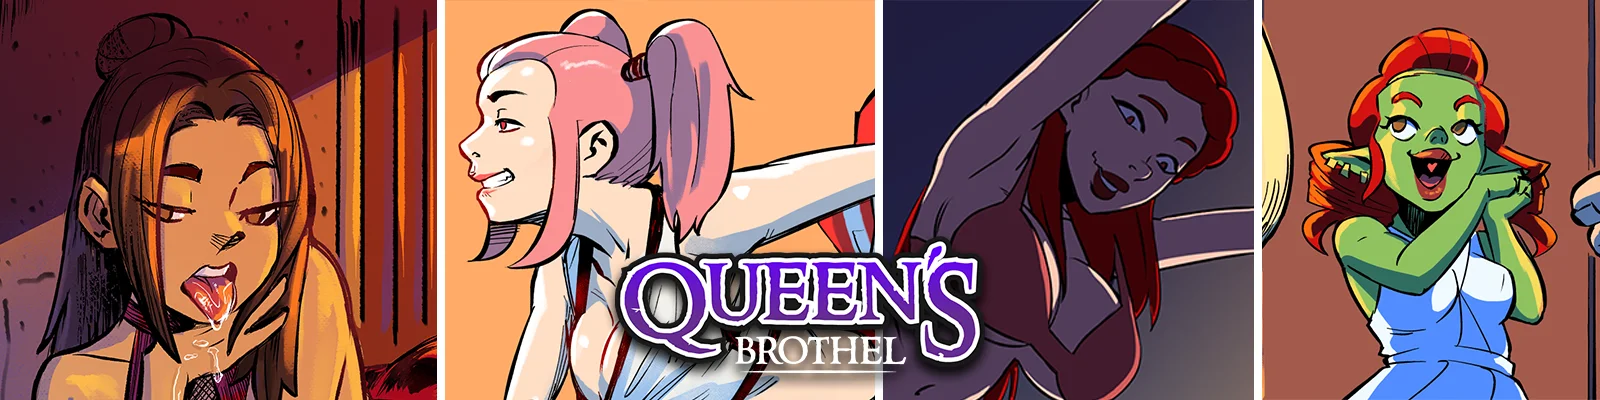 Download DPMaker - Queen's Brothel